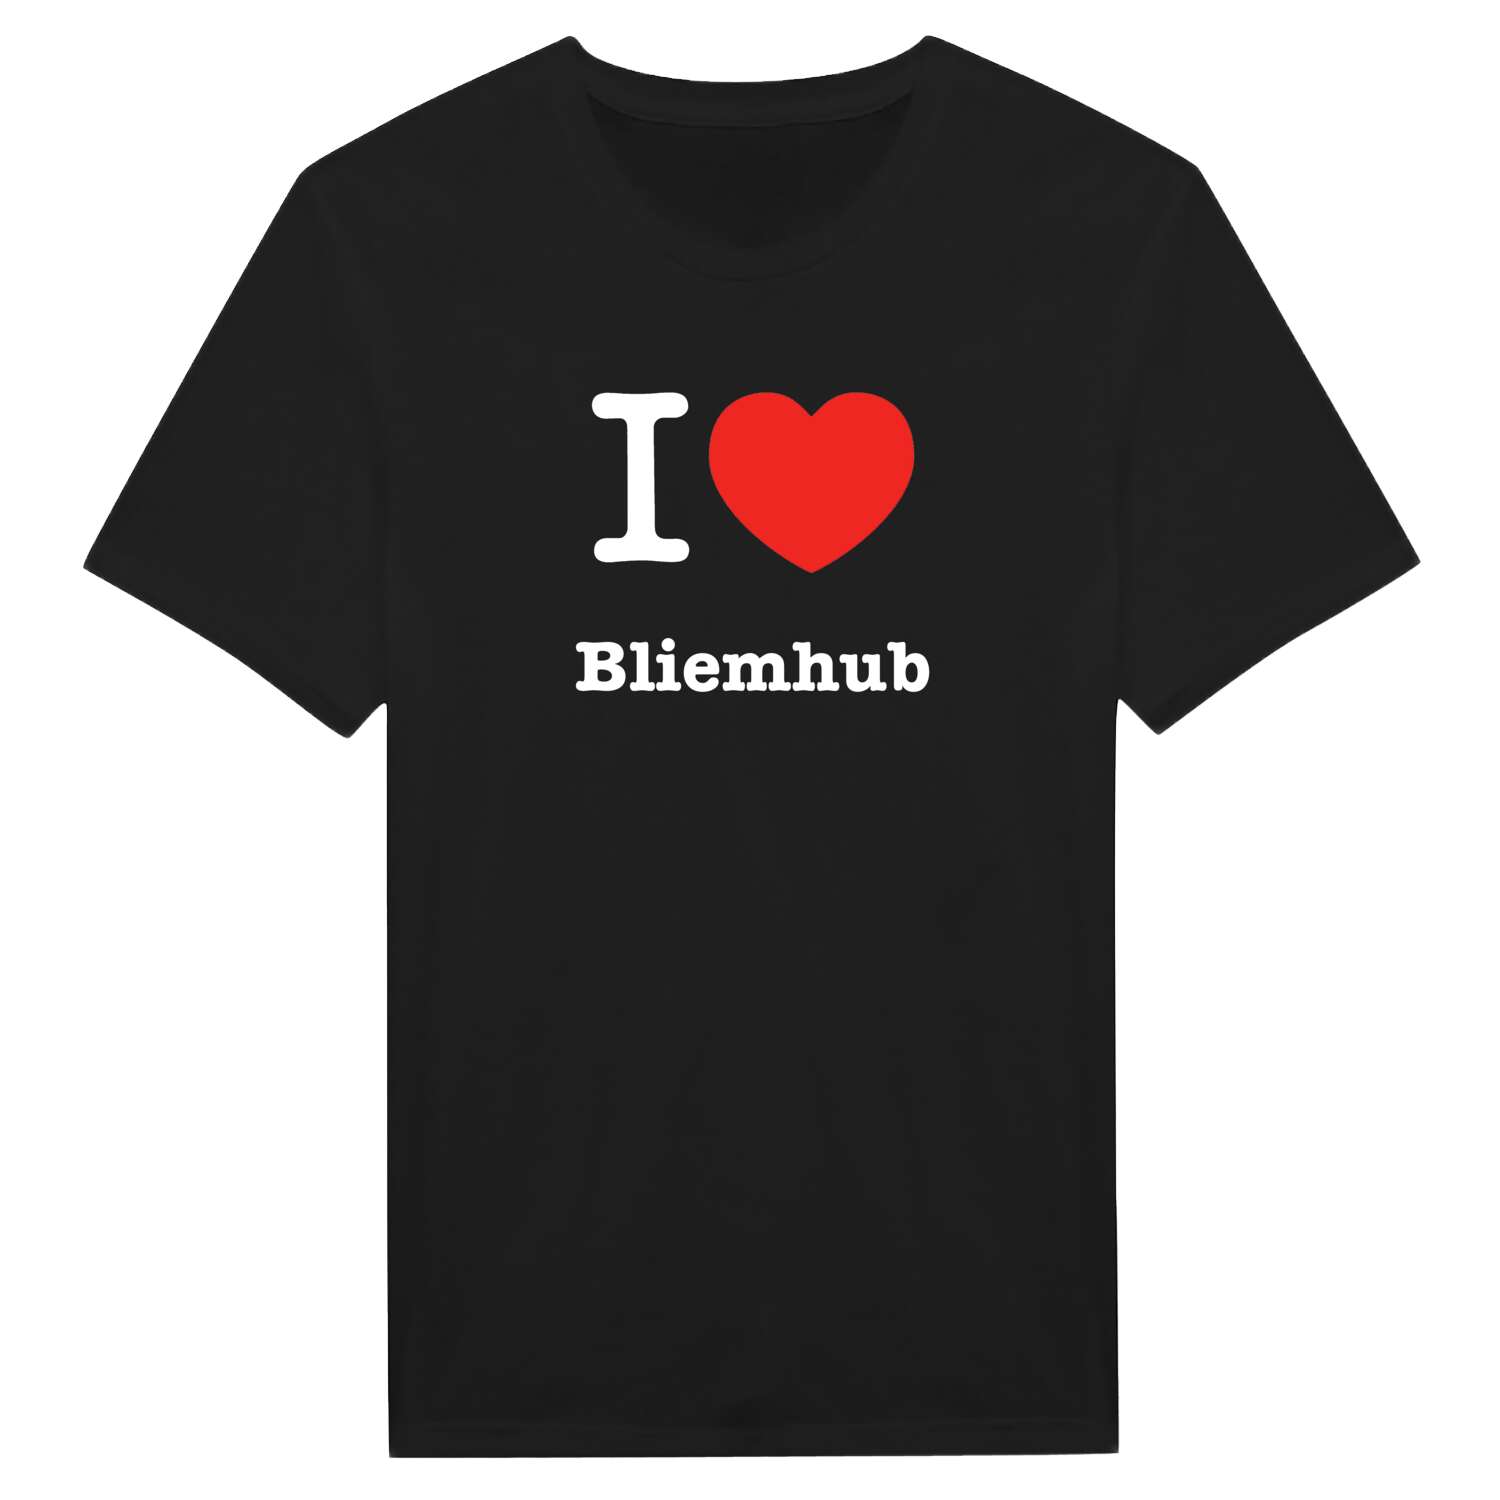 Bliemhub T-Shirt »I love«